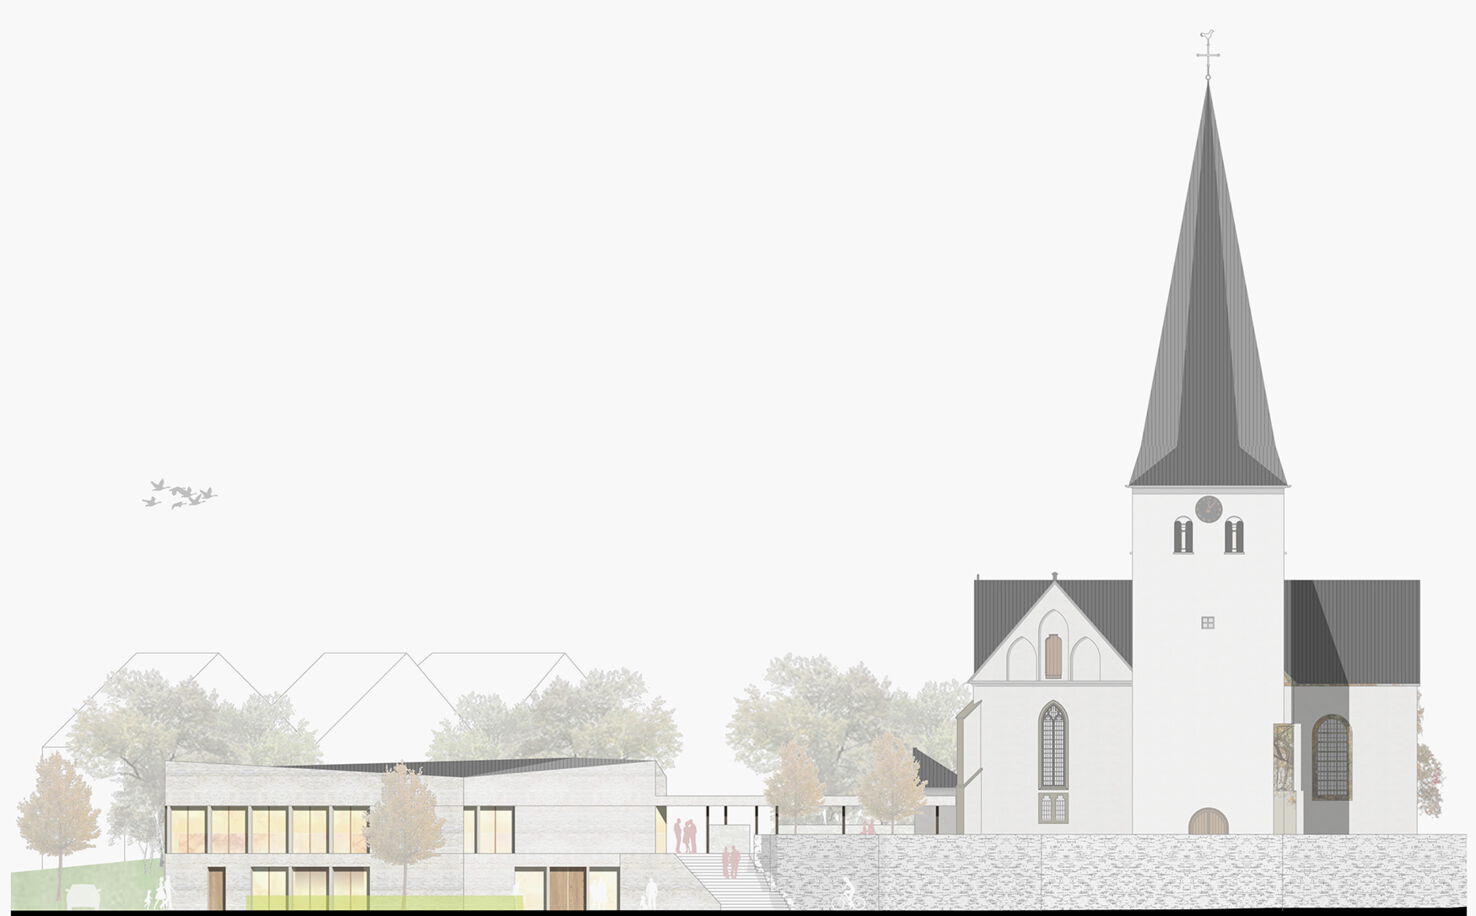 Bild 4 zu Projekt Neubau Gemeindehaus Bünde